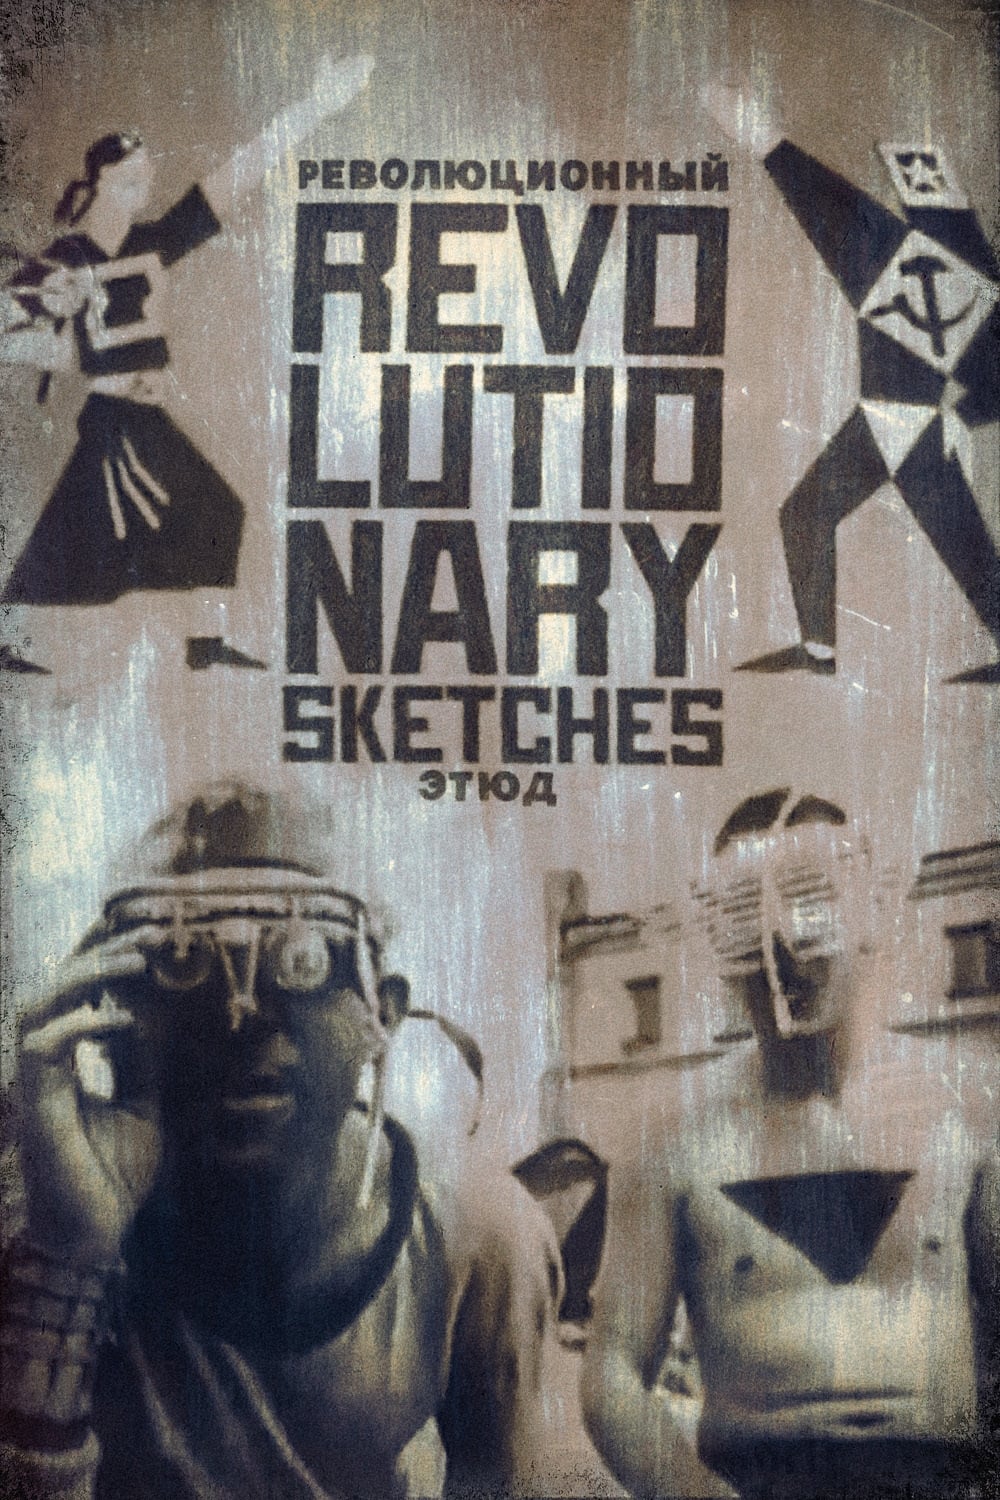 Revolutionary Sketches